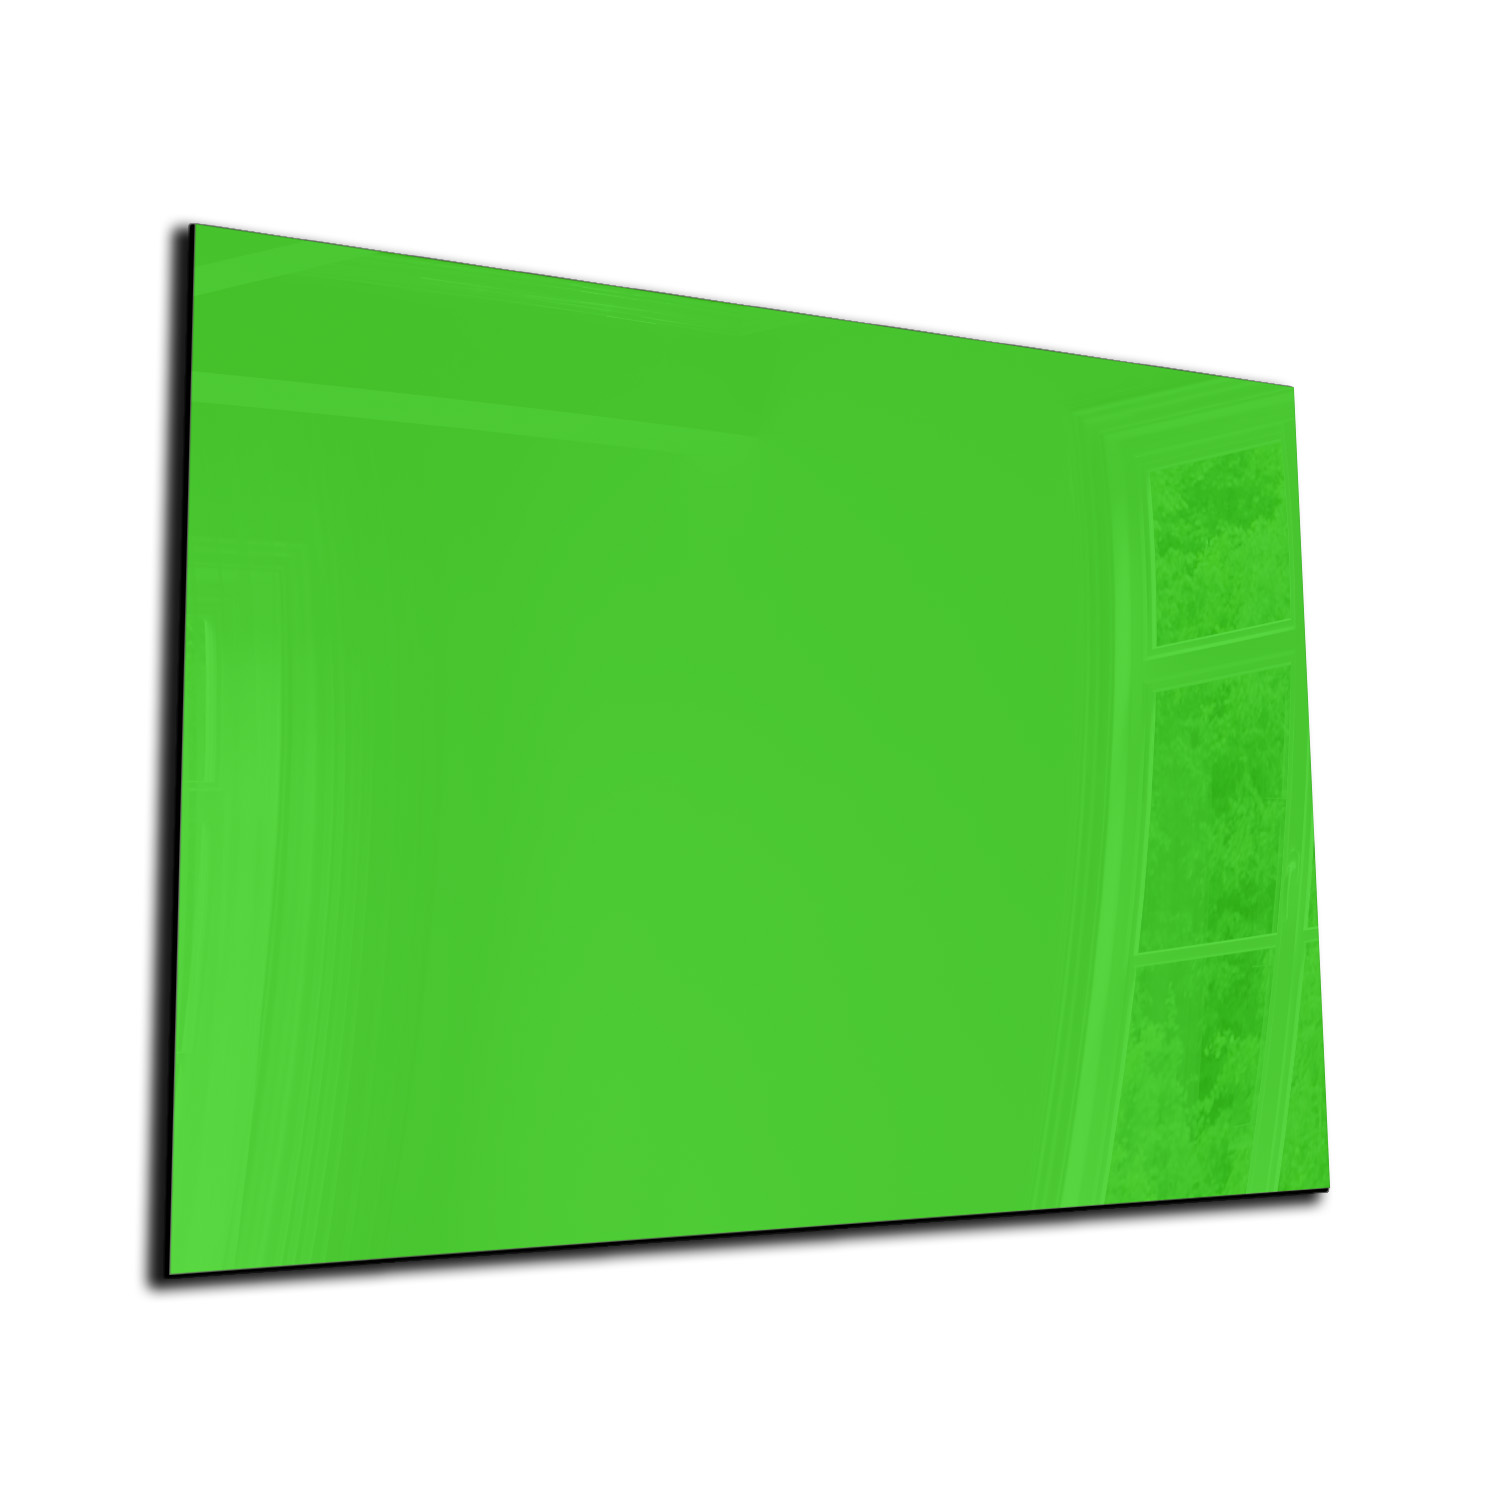 Bediening mogelijk Verenigde Staten van Amerika Entertainment Magneetbord - Glas - Whiteboard - Memobord - Magnetisch - Diverse maten -  Kleur geelgroen - Designglas